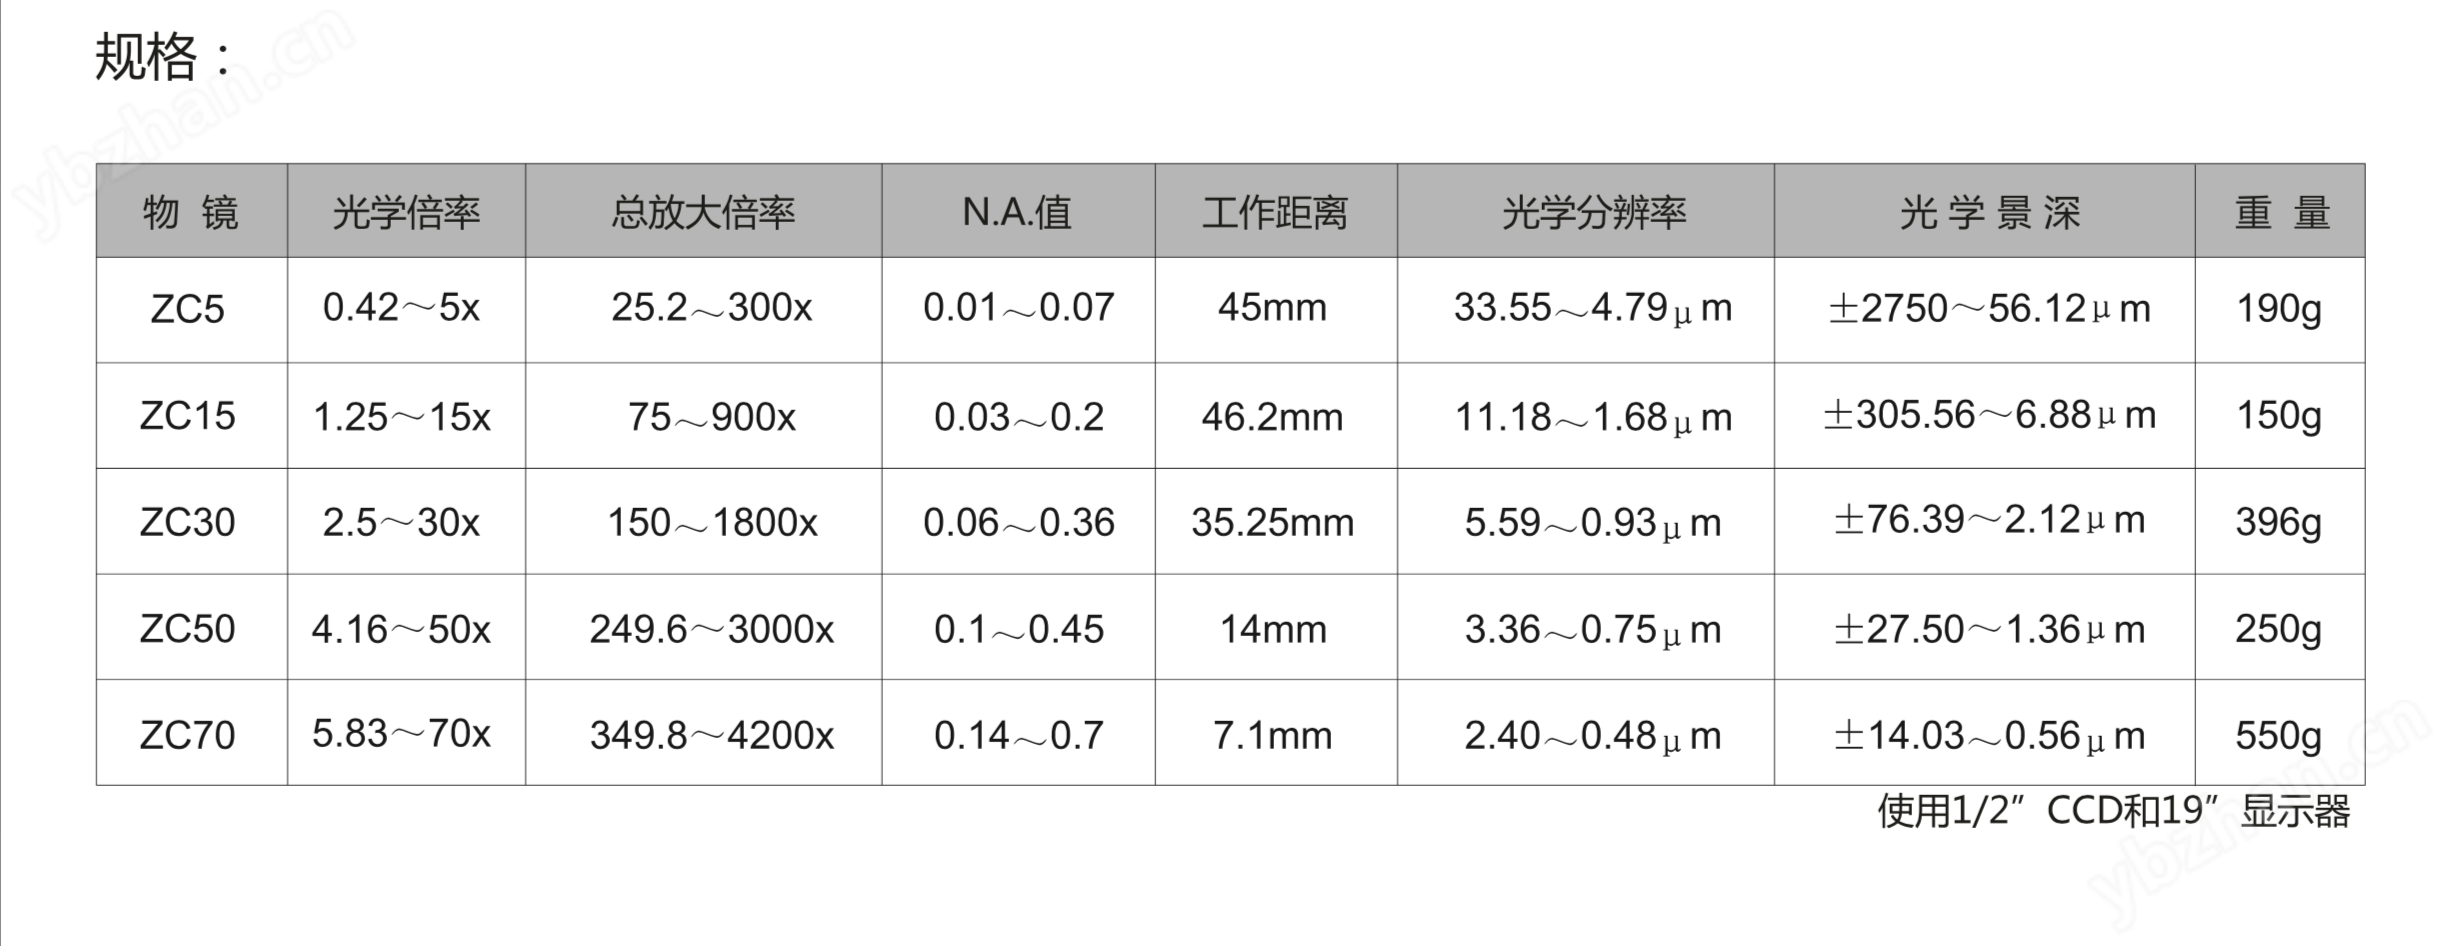 日本UNION DZ4-E DZ4-T 高倍率变倍 光学显微镜 高分辨率